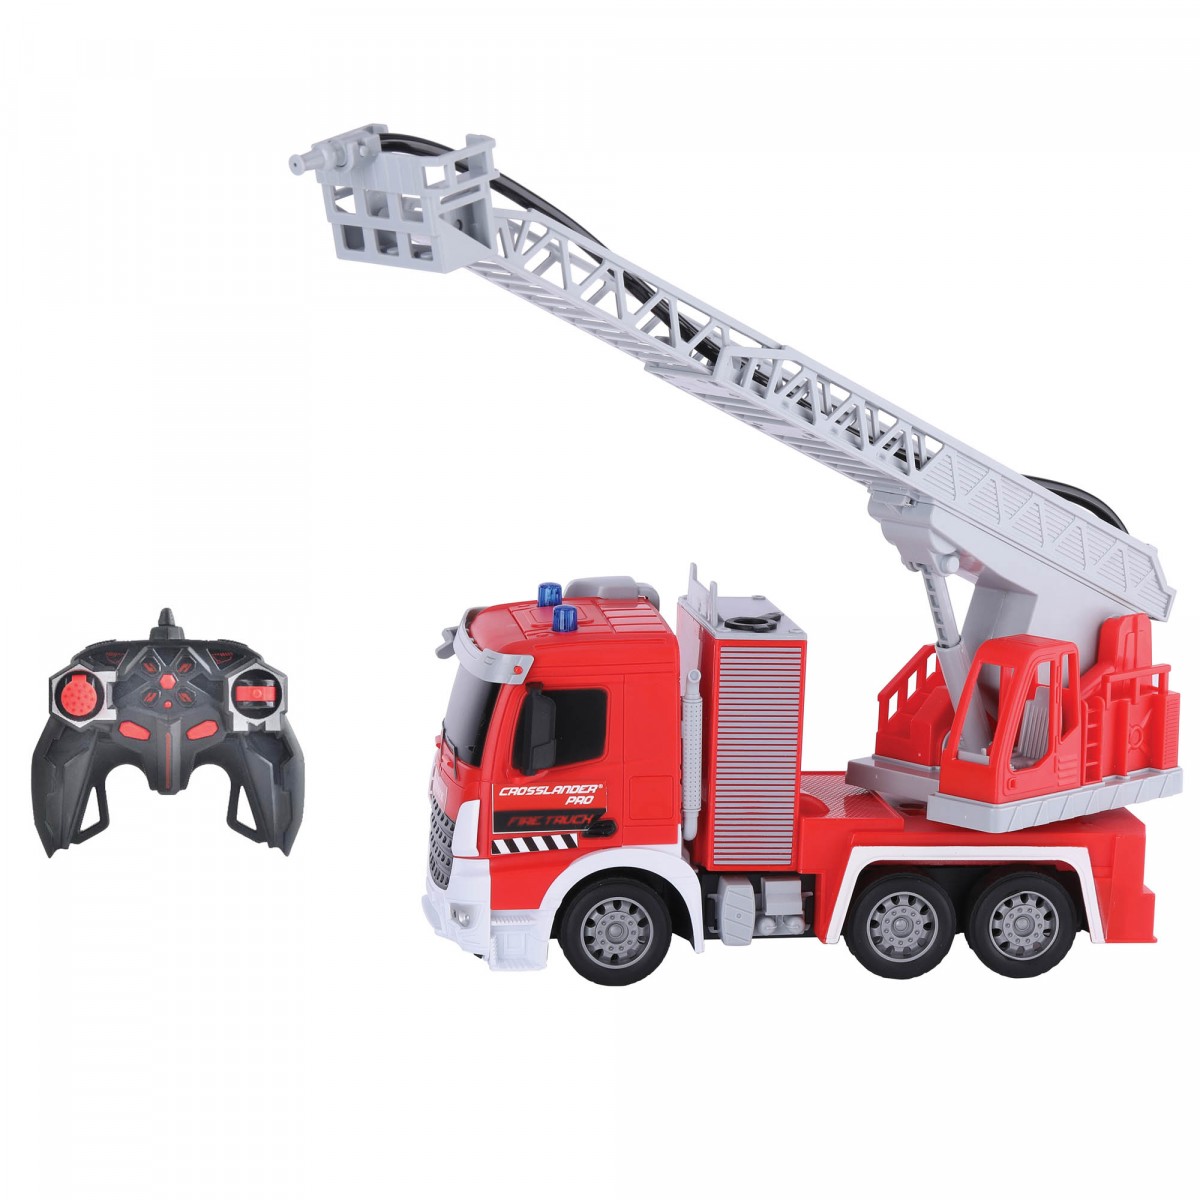 Crosslander® pro RC Fire Truck - camion dei pompieri telecomandato